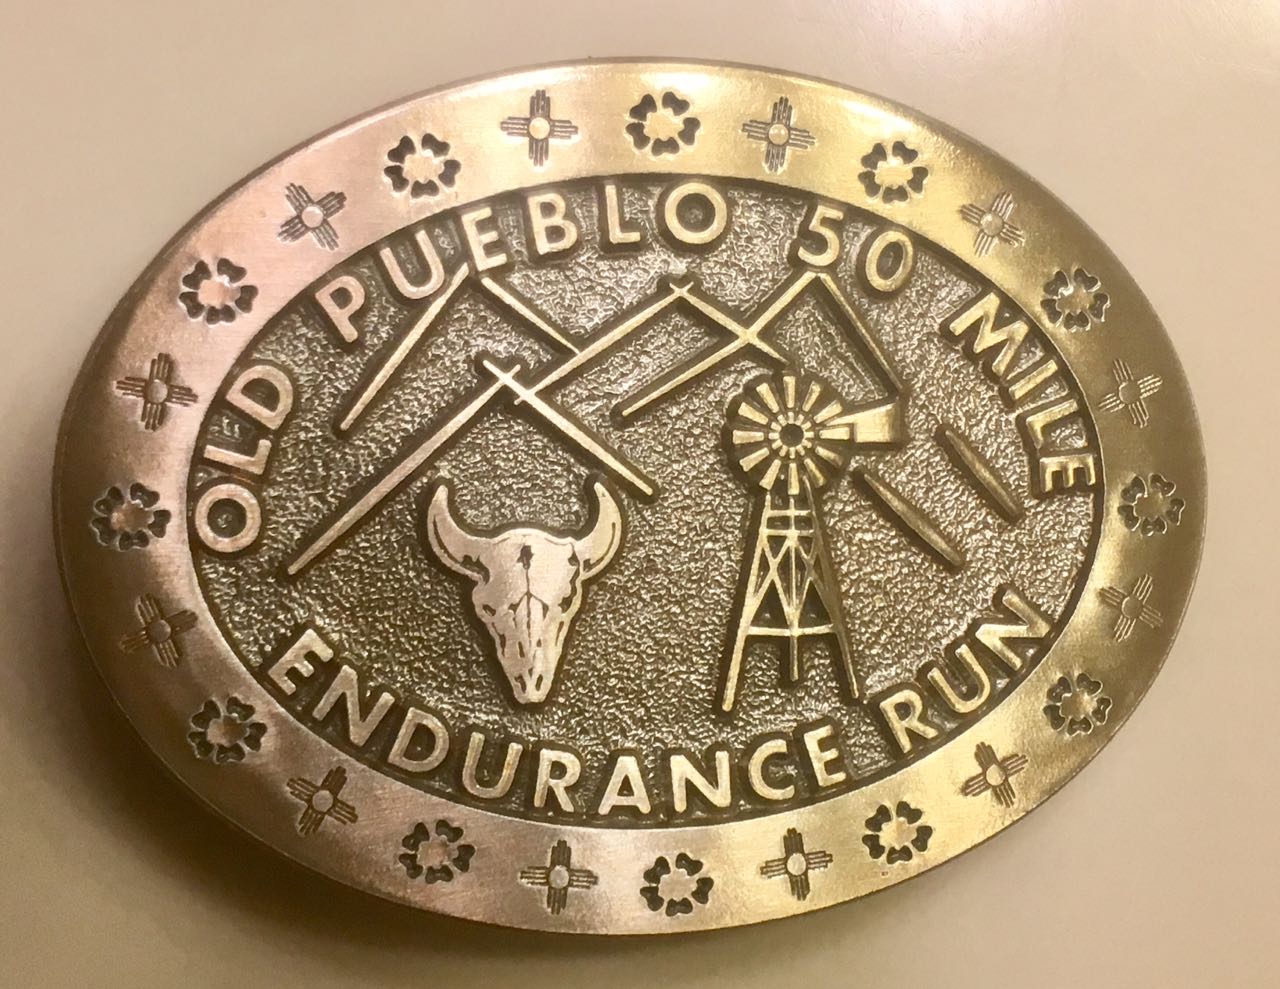 Greg's Running Adventures: Old Pueblo 50 Miler